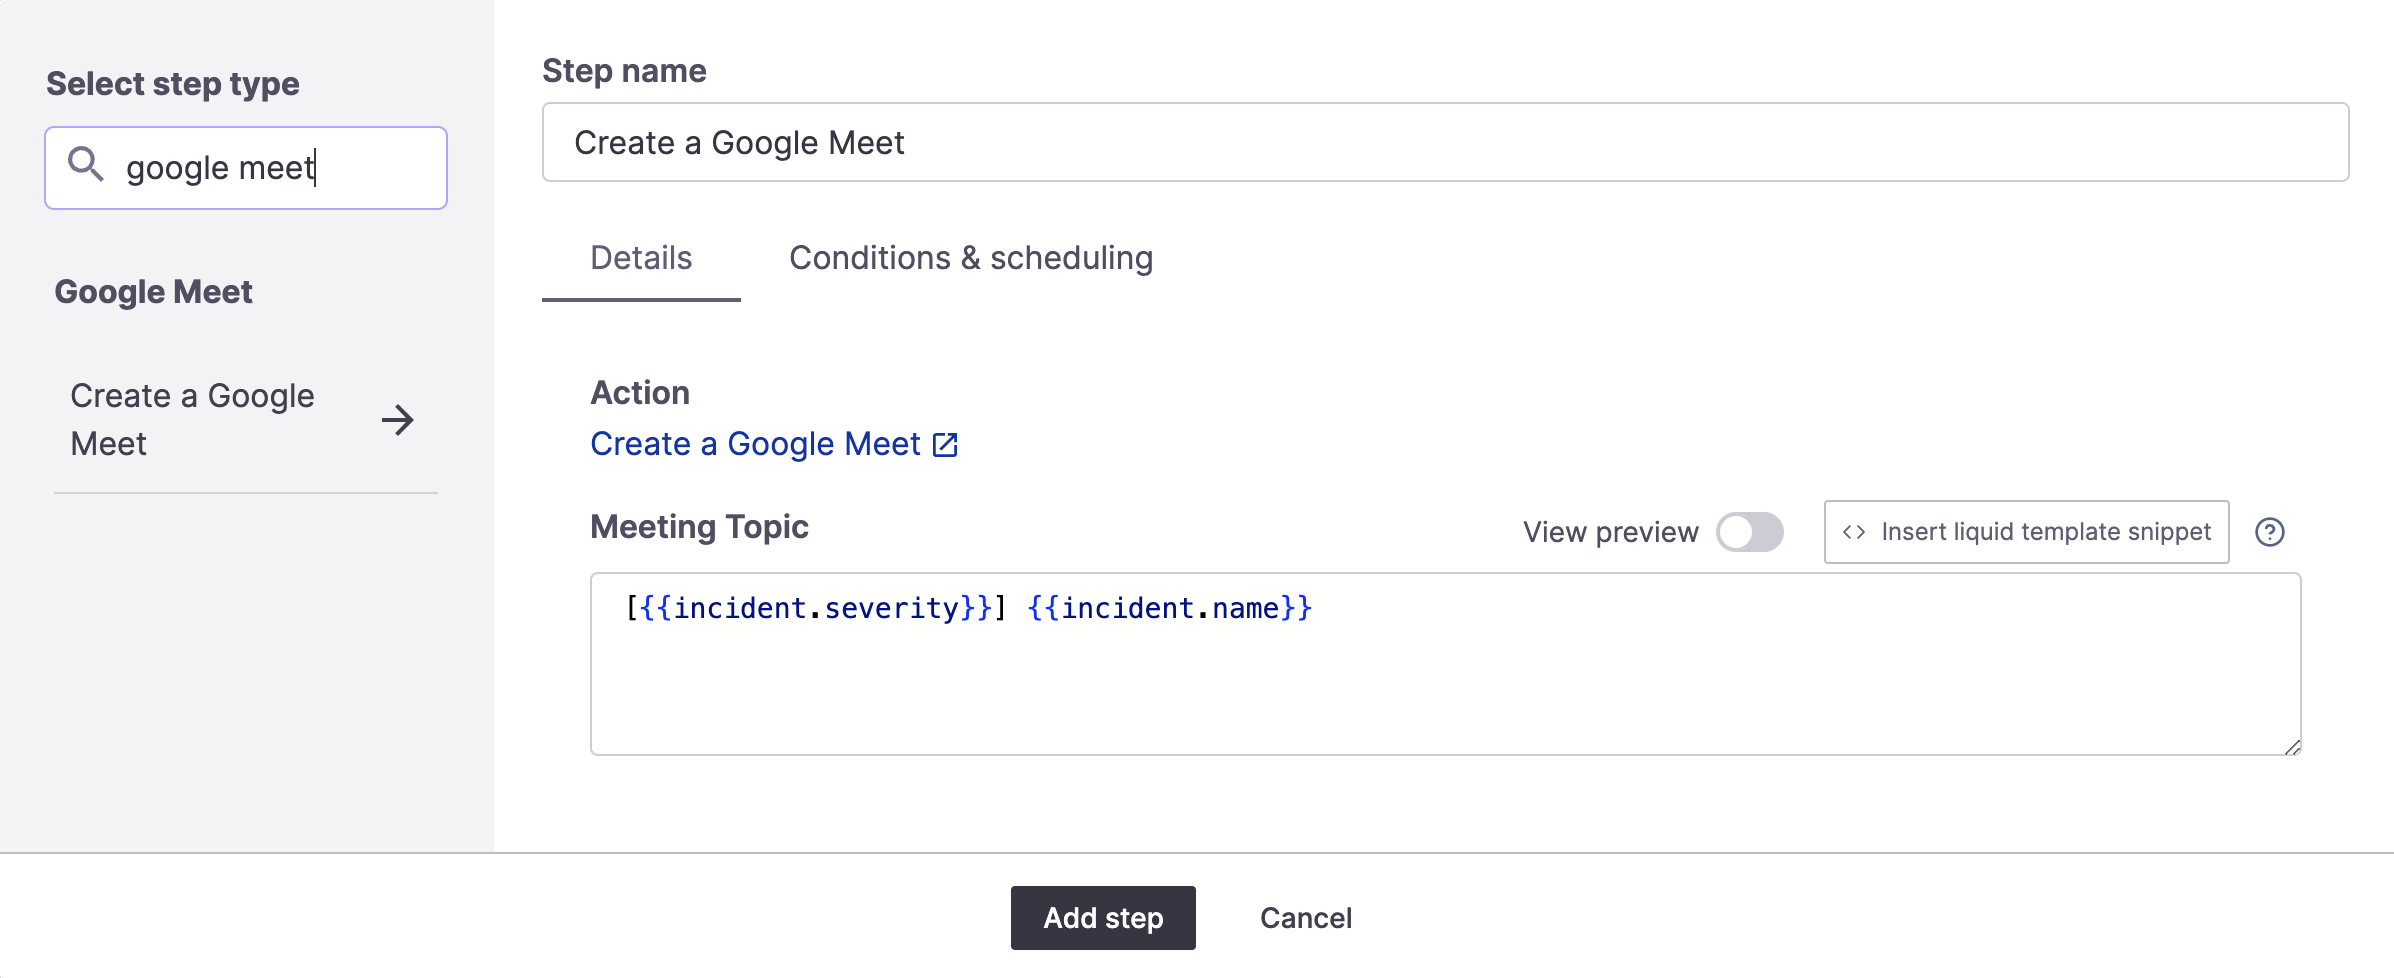 Google Meet step